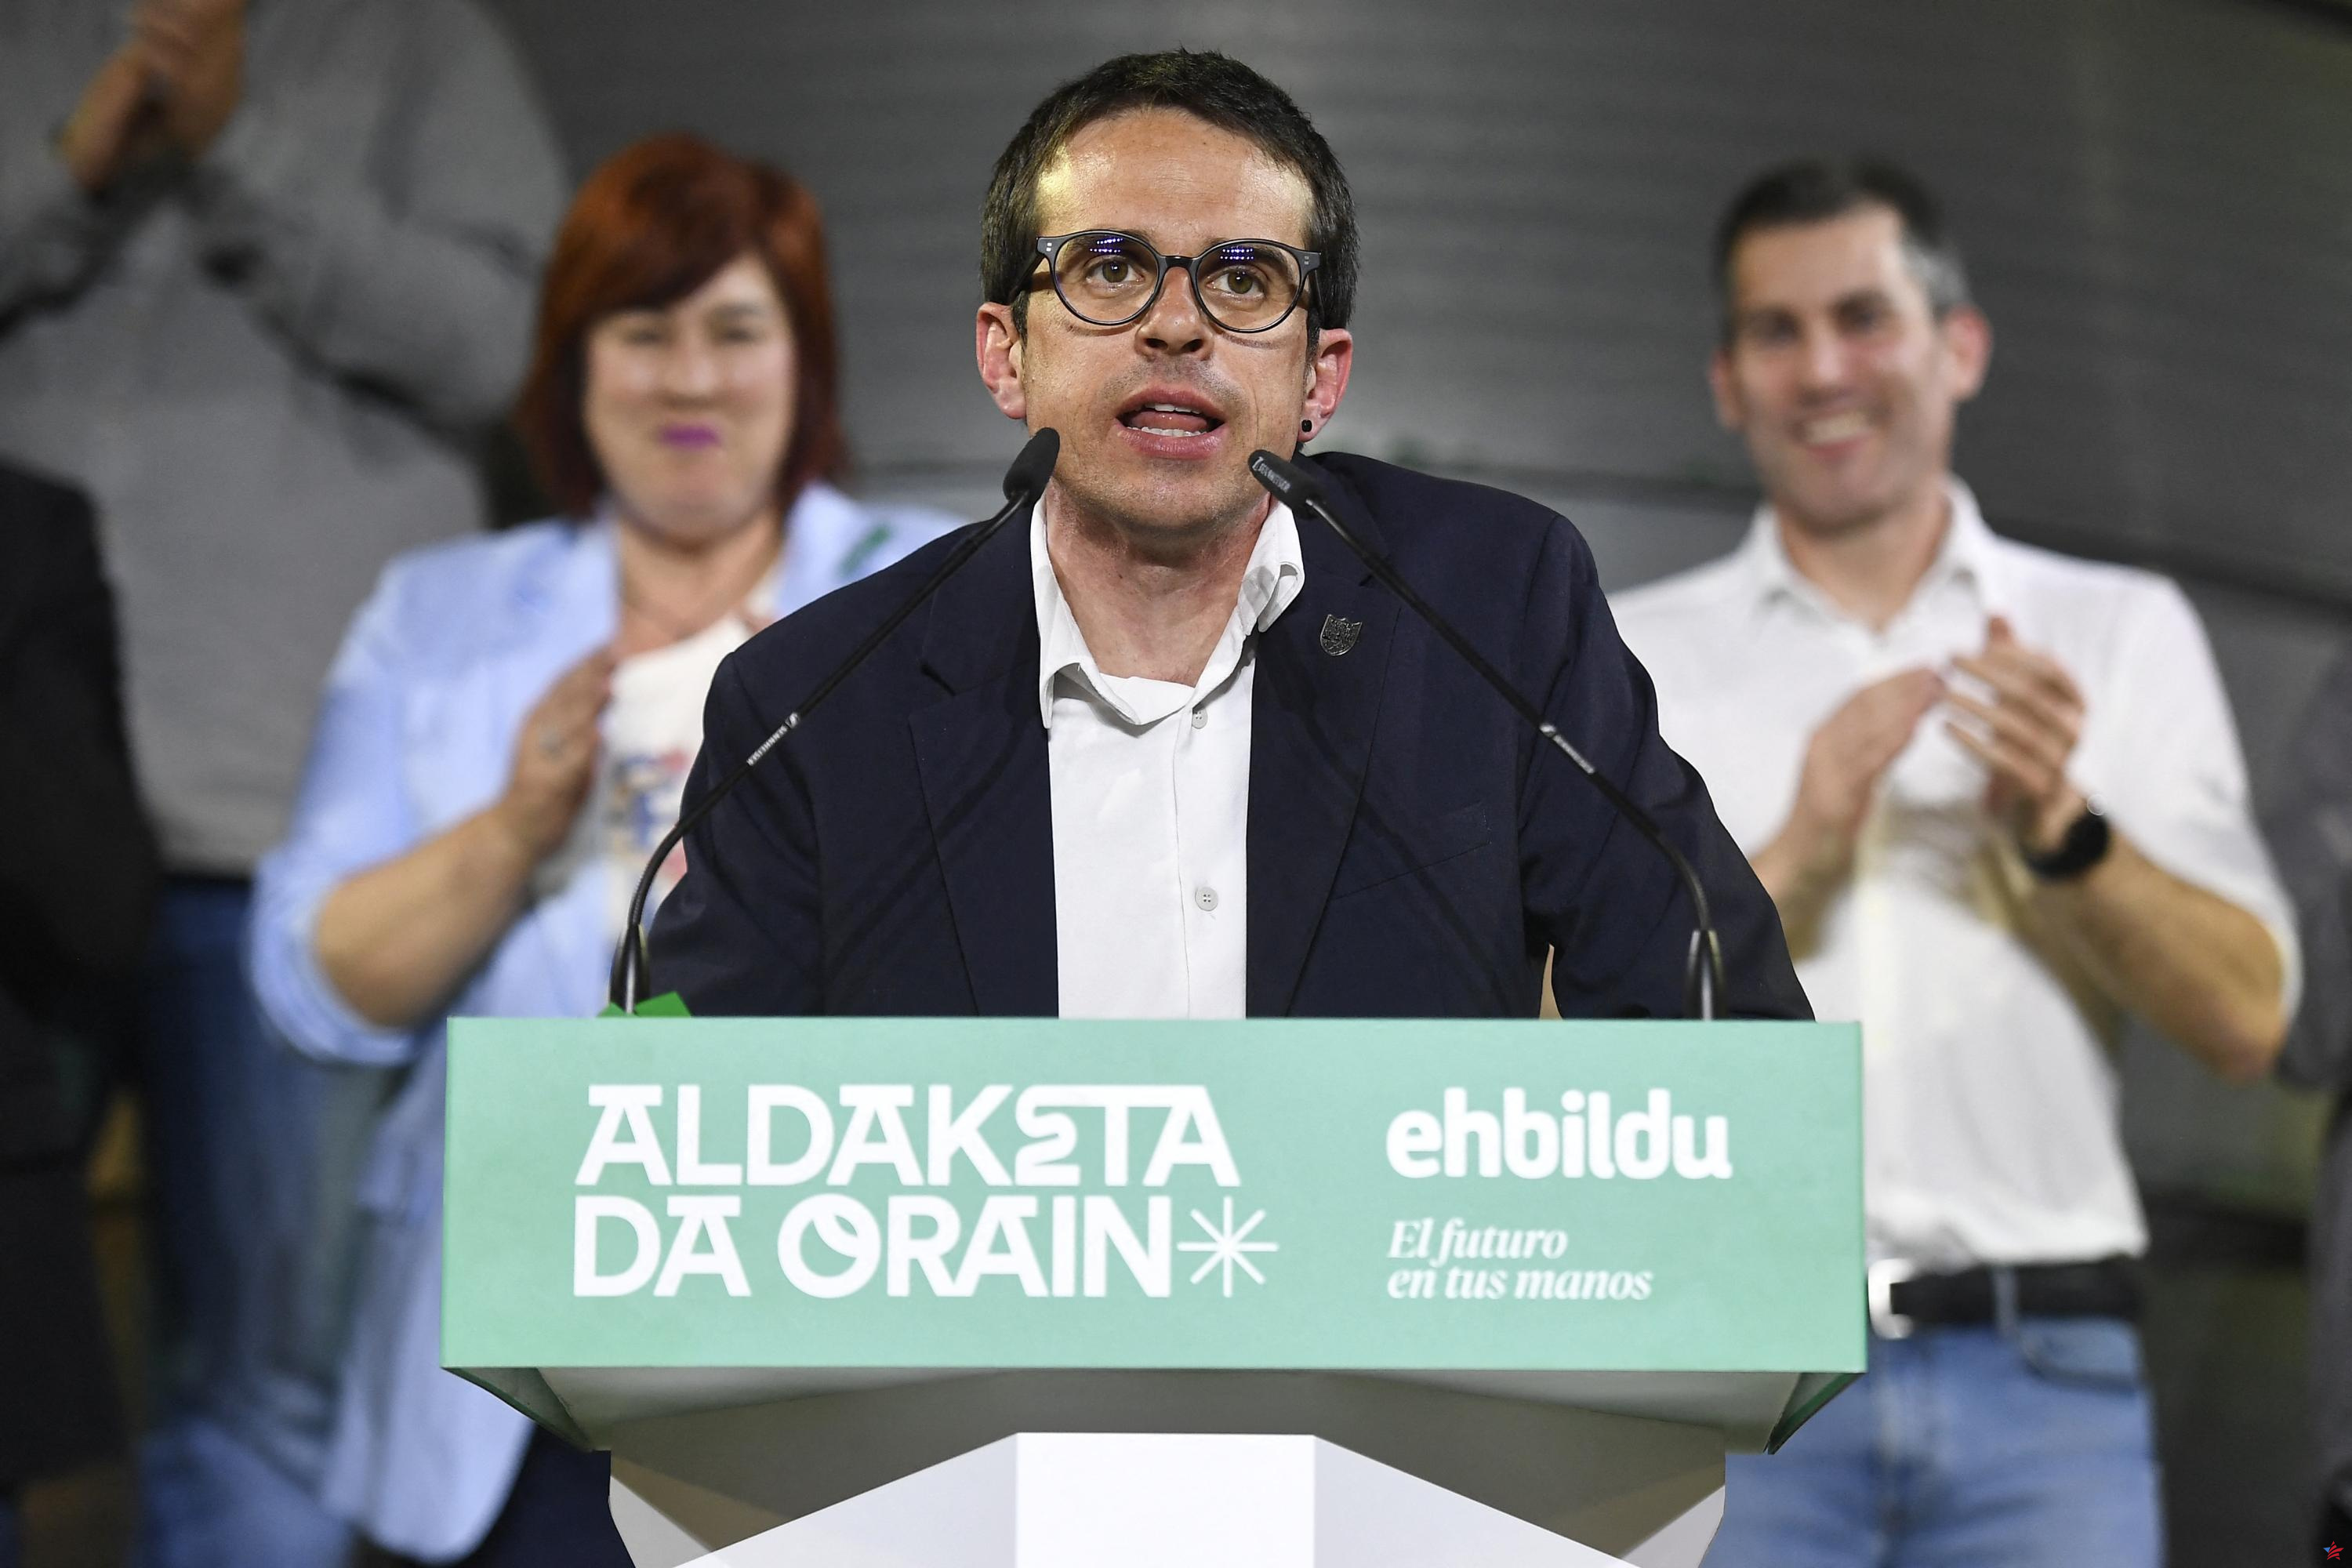 País Vasco español: avance electoral histórico para los herederos de la rama política de ETA